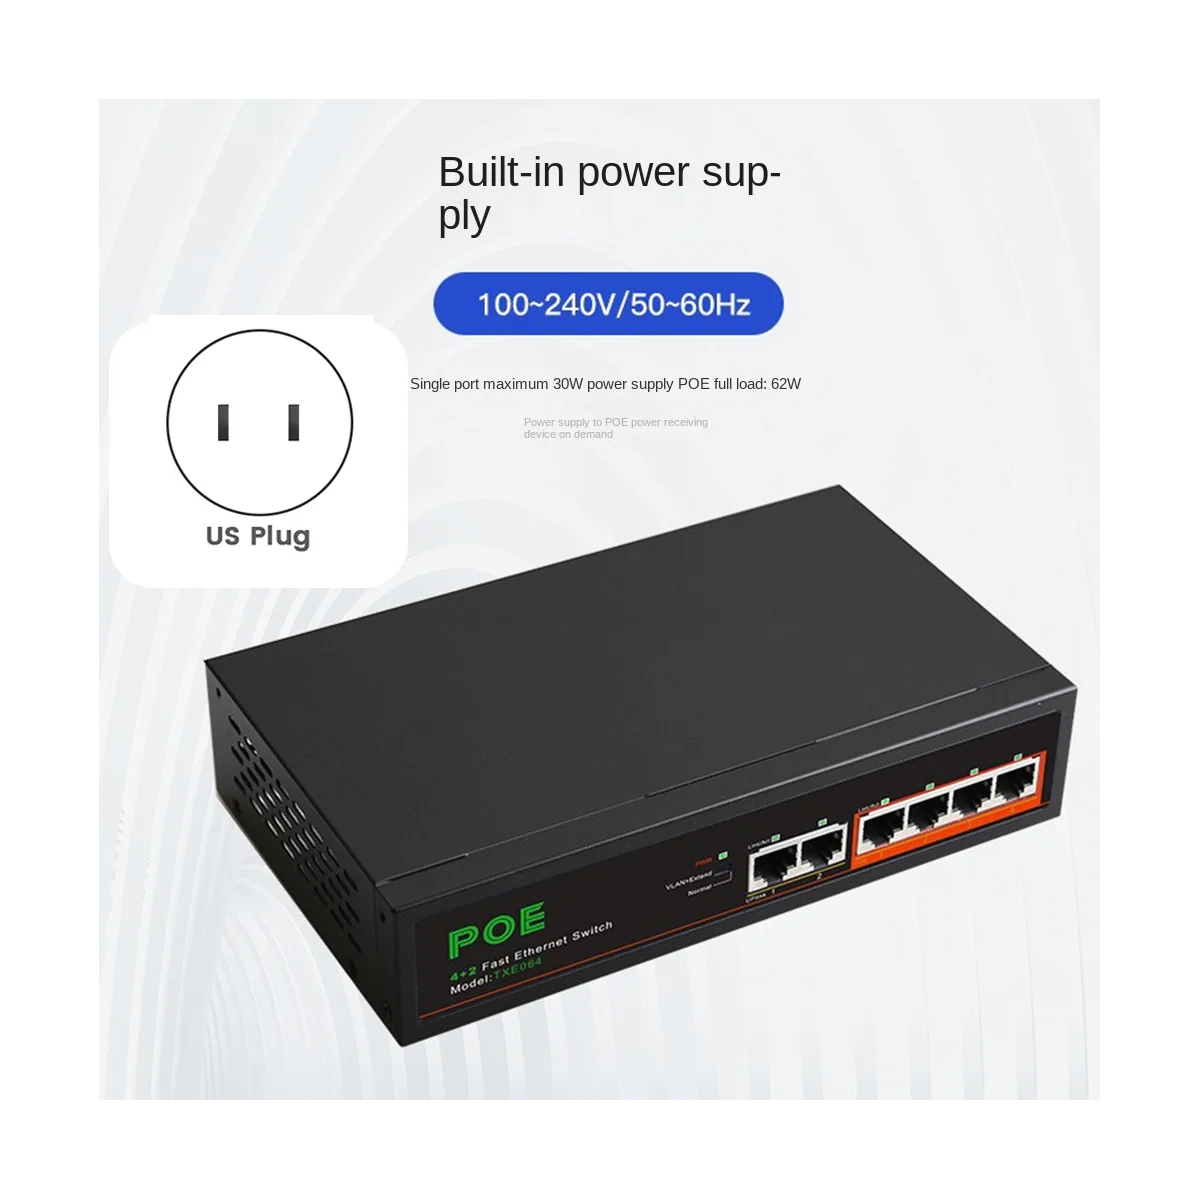 6 Портов POE-коммутатора 4-PoE + 2 UP-Link Сеть Fast Ethernet 100 Мбит/с, Концентратор Домашней сети, Адаптер Серии Power Connect-US Plug Изображение 1